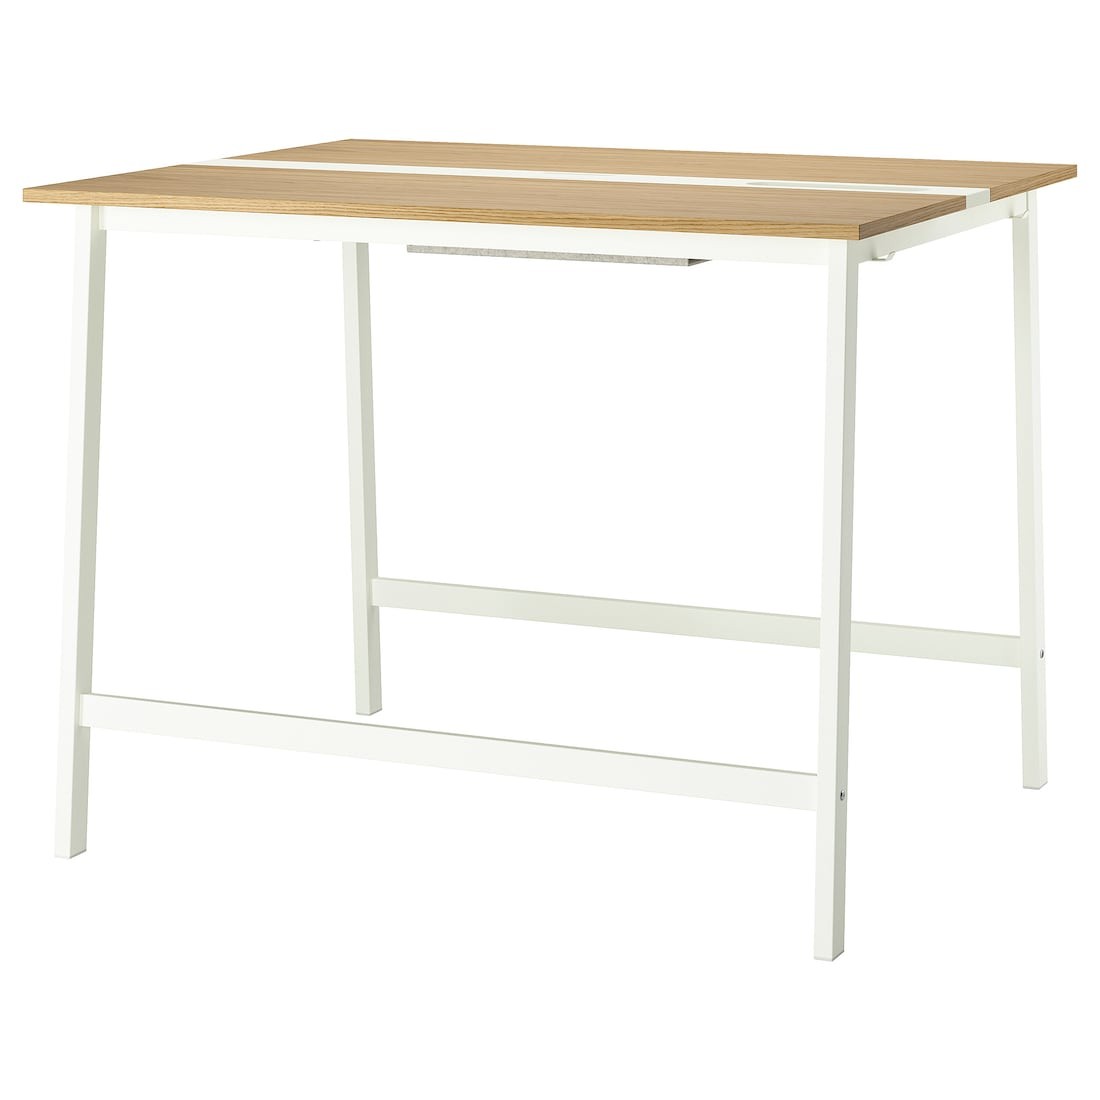 MITTZON стіл для конференцій, дубовий шпон / білий, 140x108x105 см